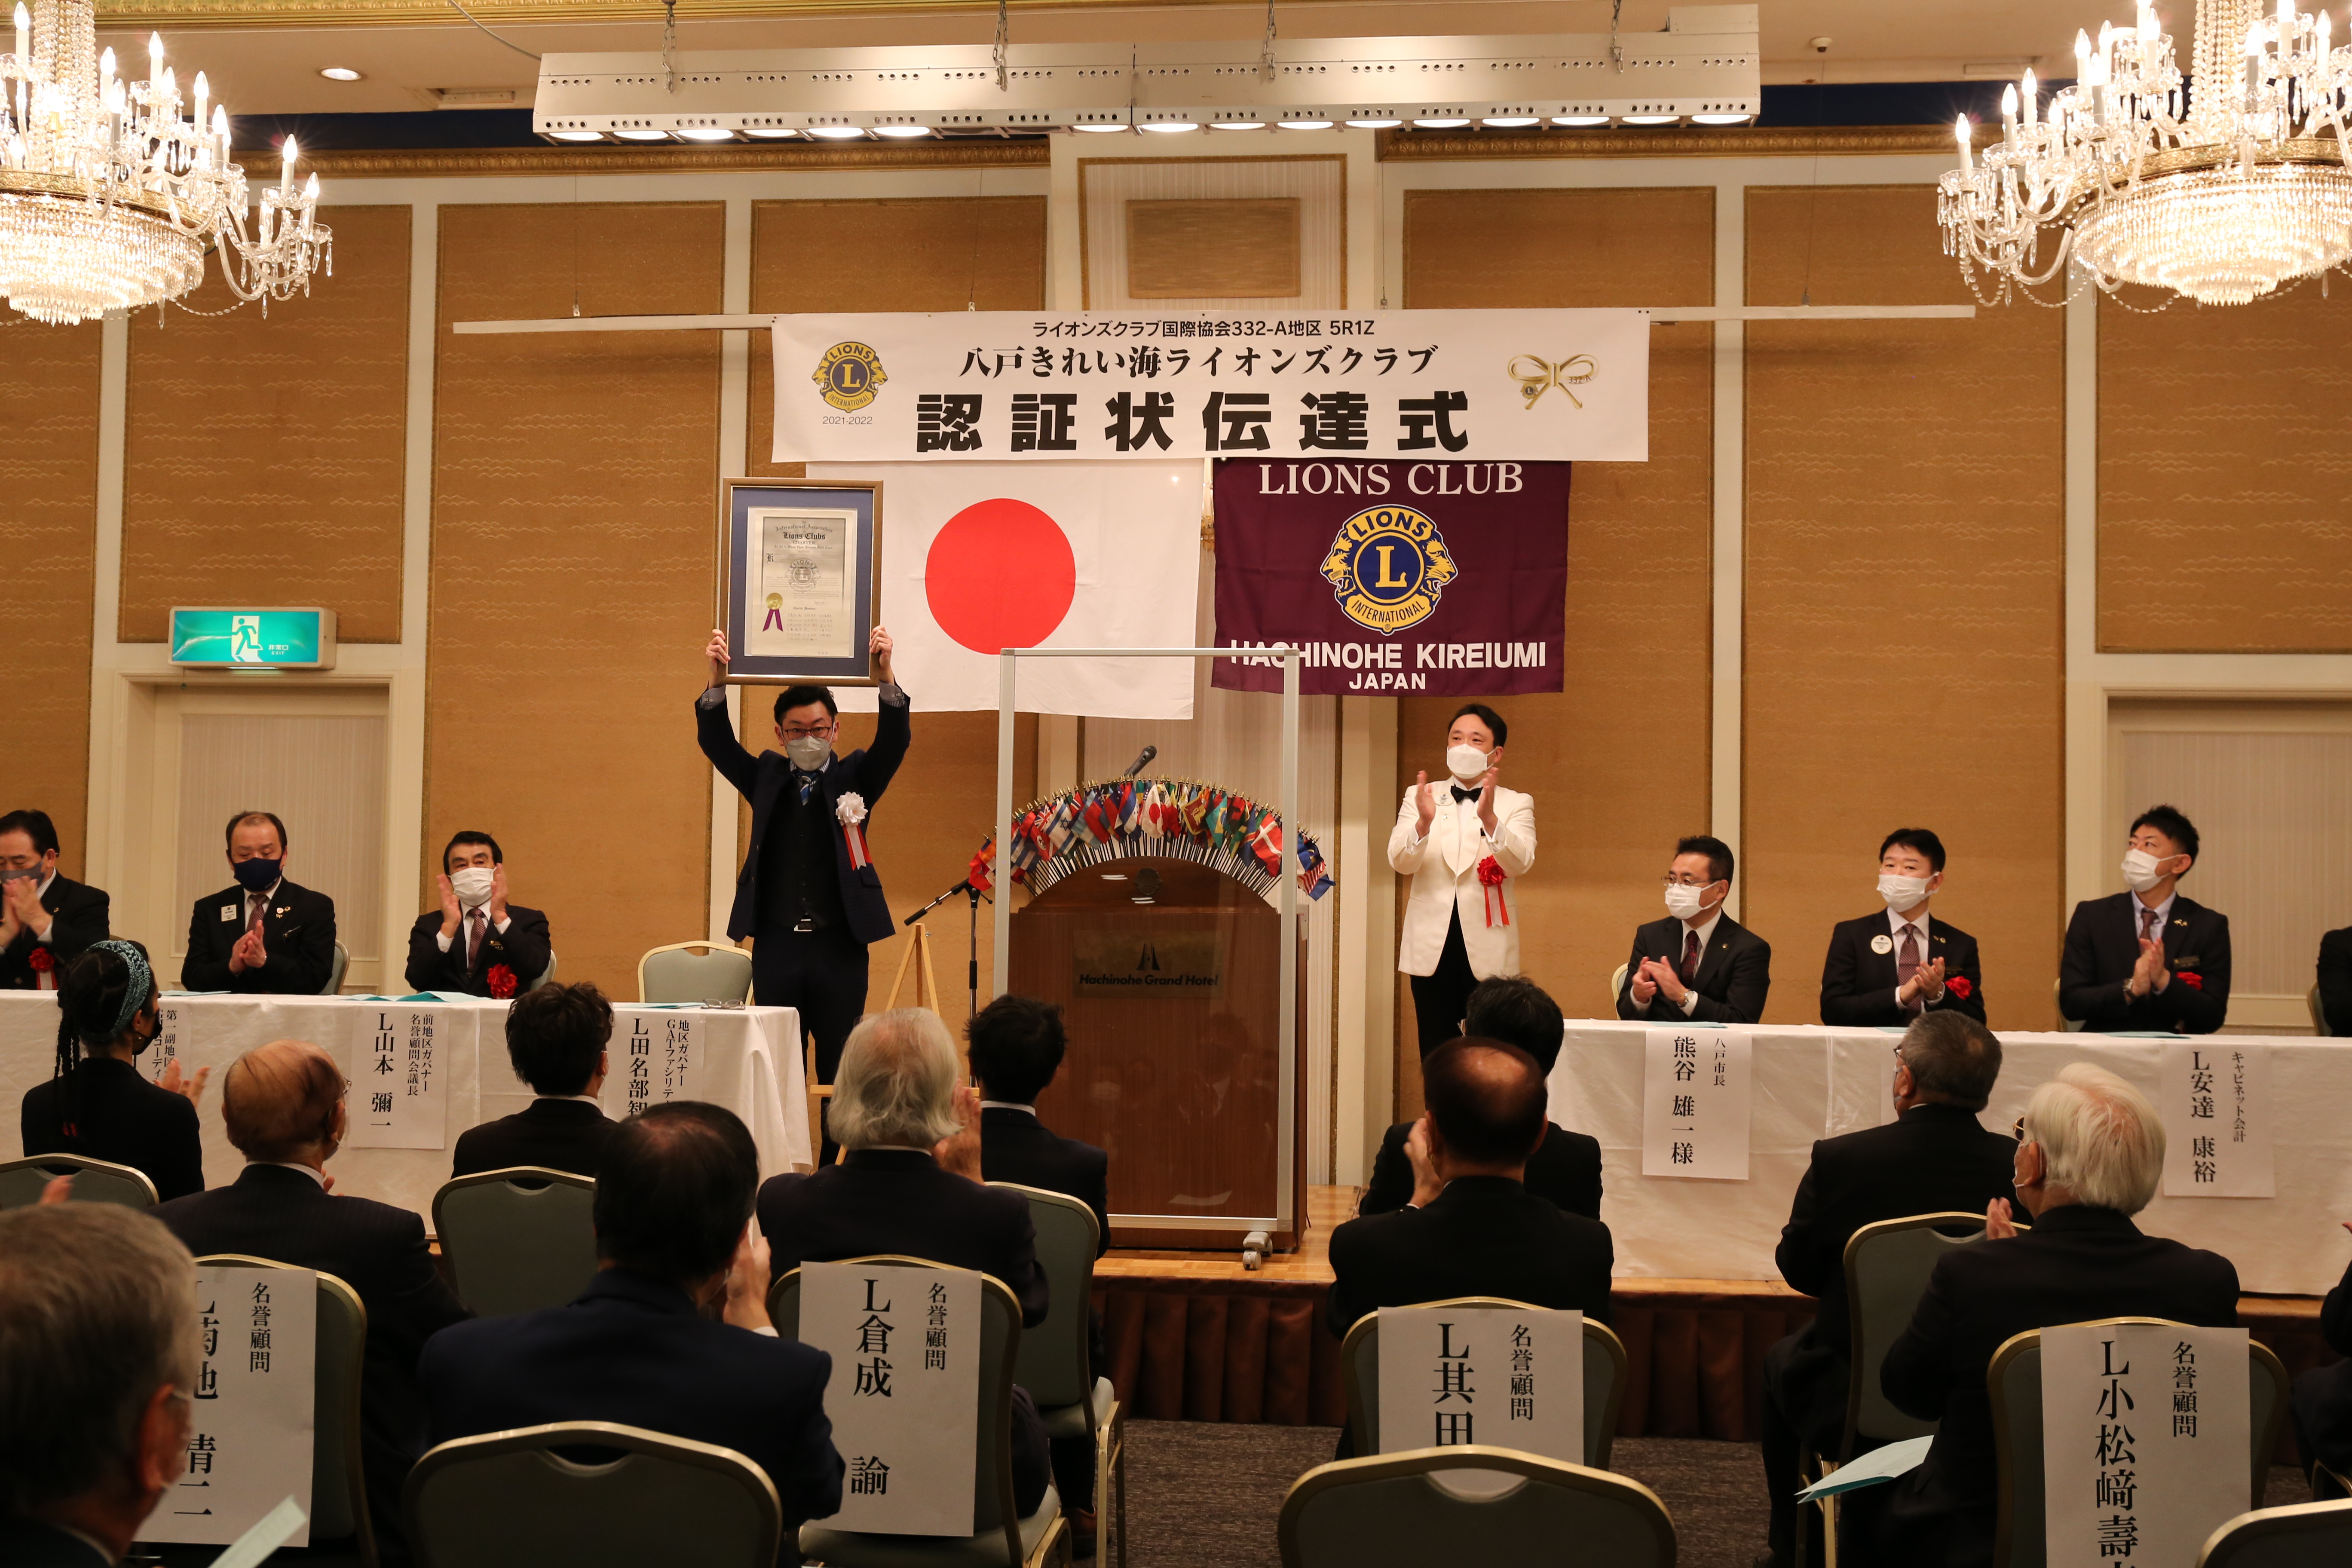 Gründungsabend für den Hachinohe Kireiumi Lions Club